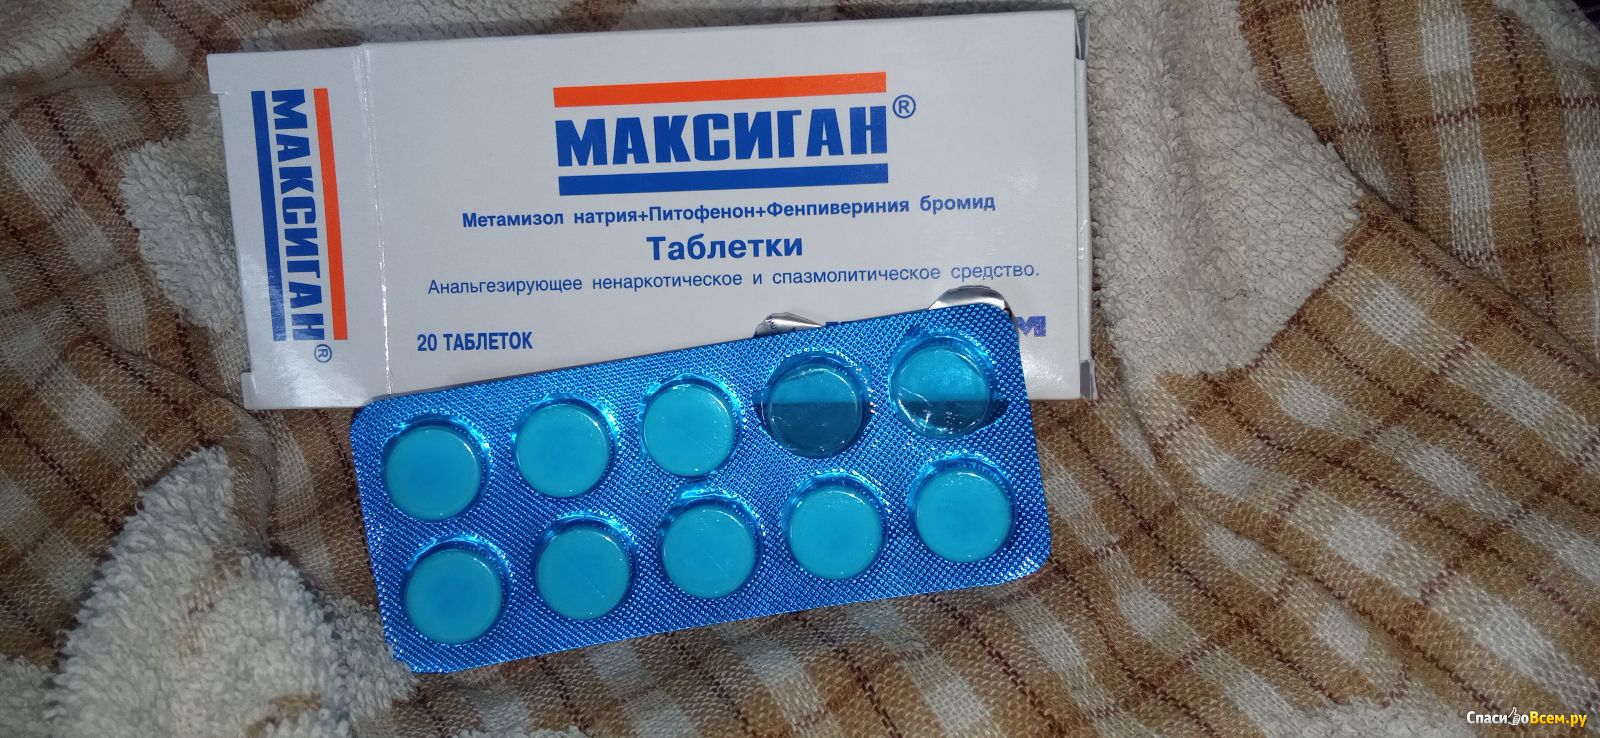 Какие самые обезболивающие таблетки. Обезболивающие таблетки. Максиган таблетки. Обезболивающие таблетки в синей упаковке. Недорогое обезболивающее в таблетках.